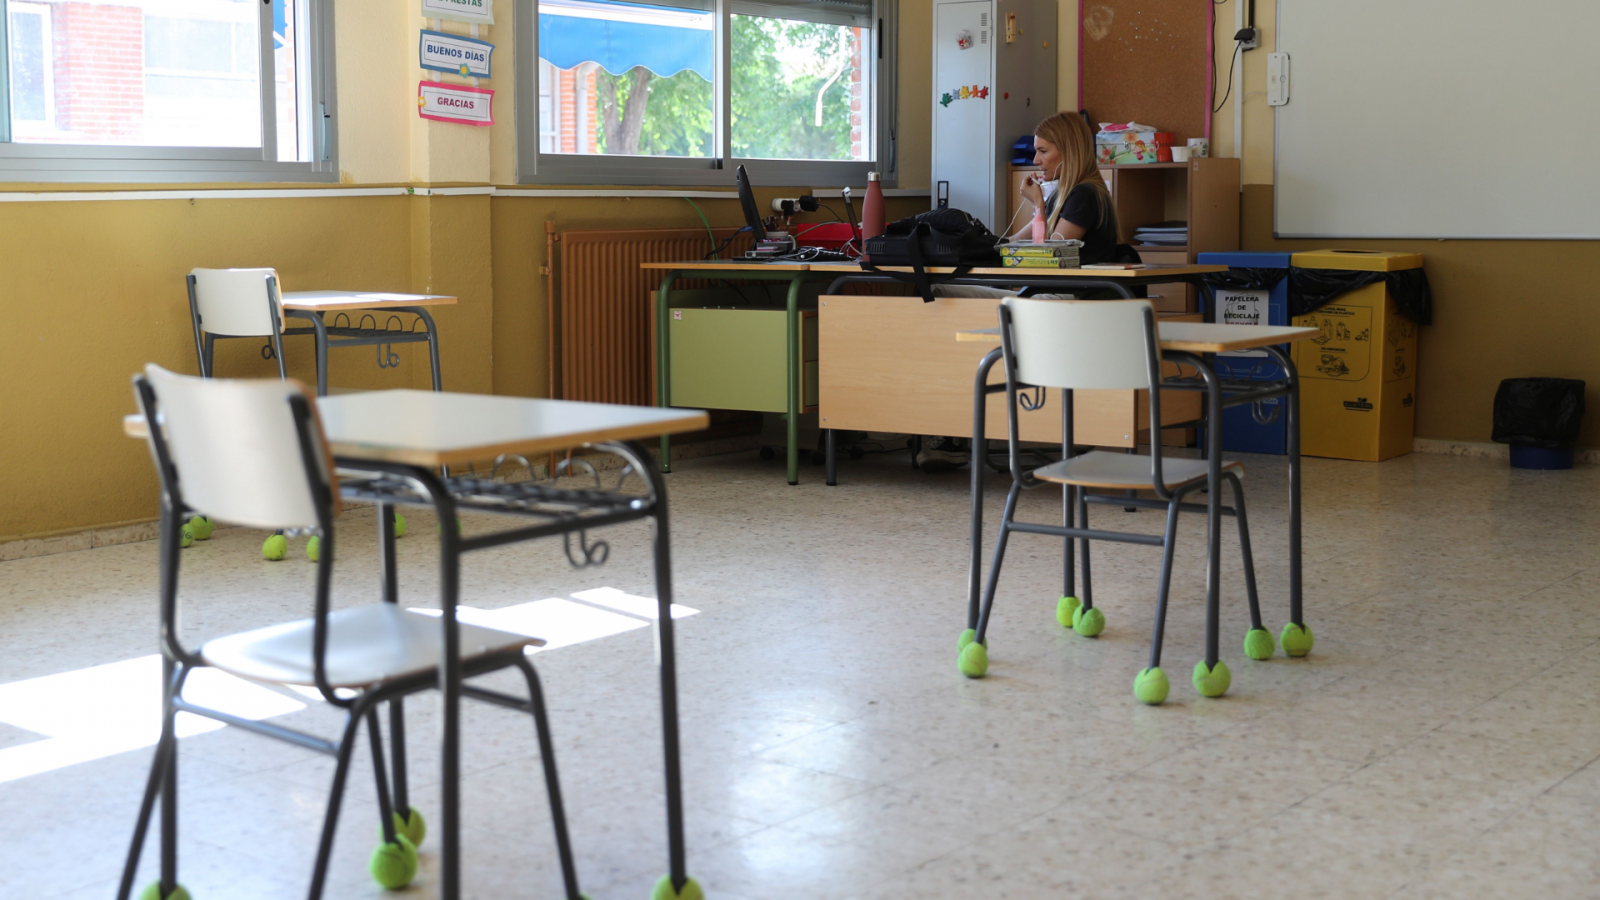  14 Horas - Vuelta a las aulas: la ANPE pide un protocolo claro y más profesores - Escuchar ahora